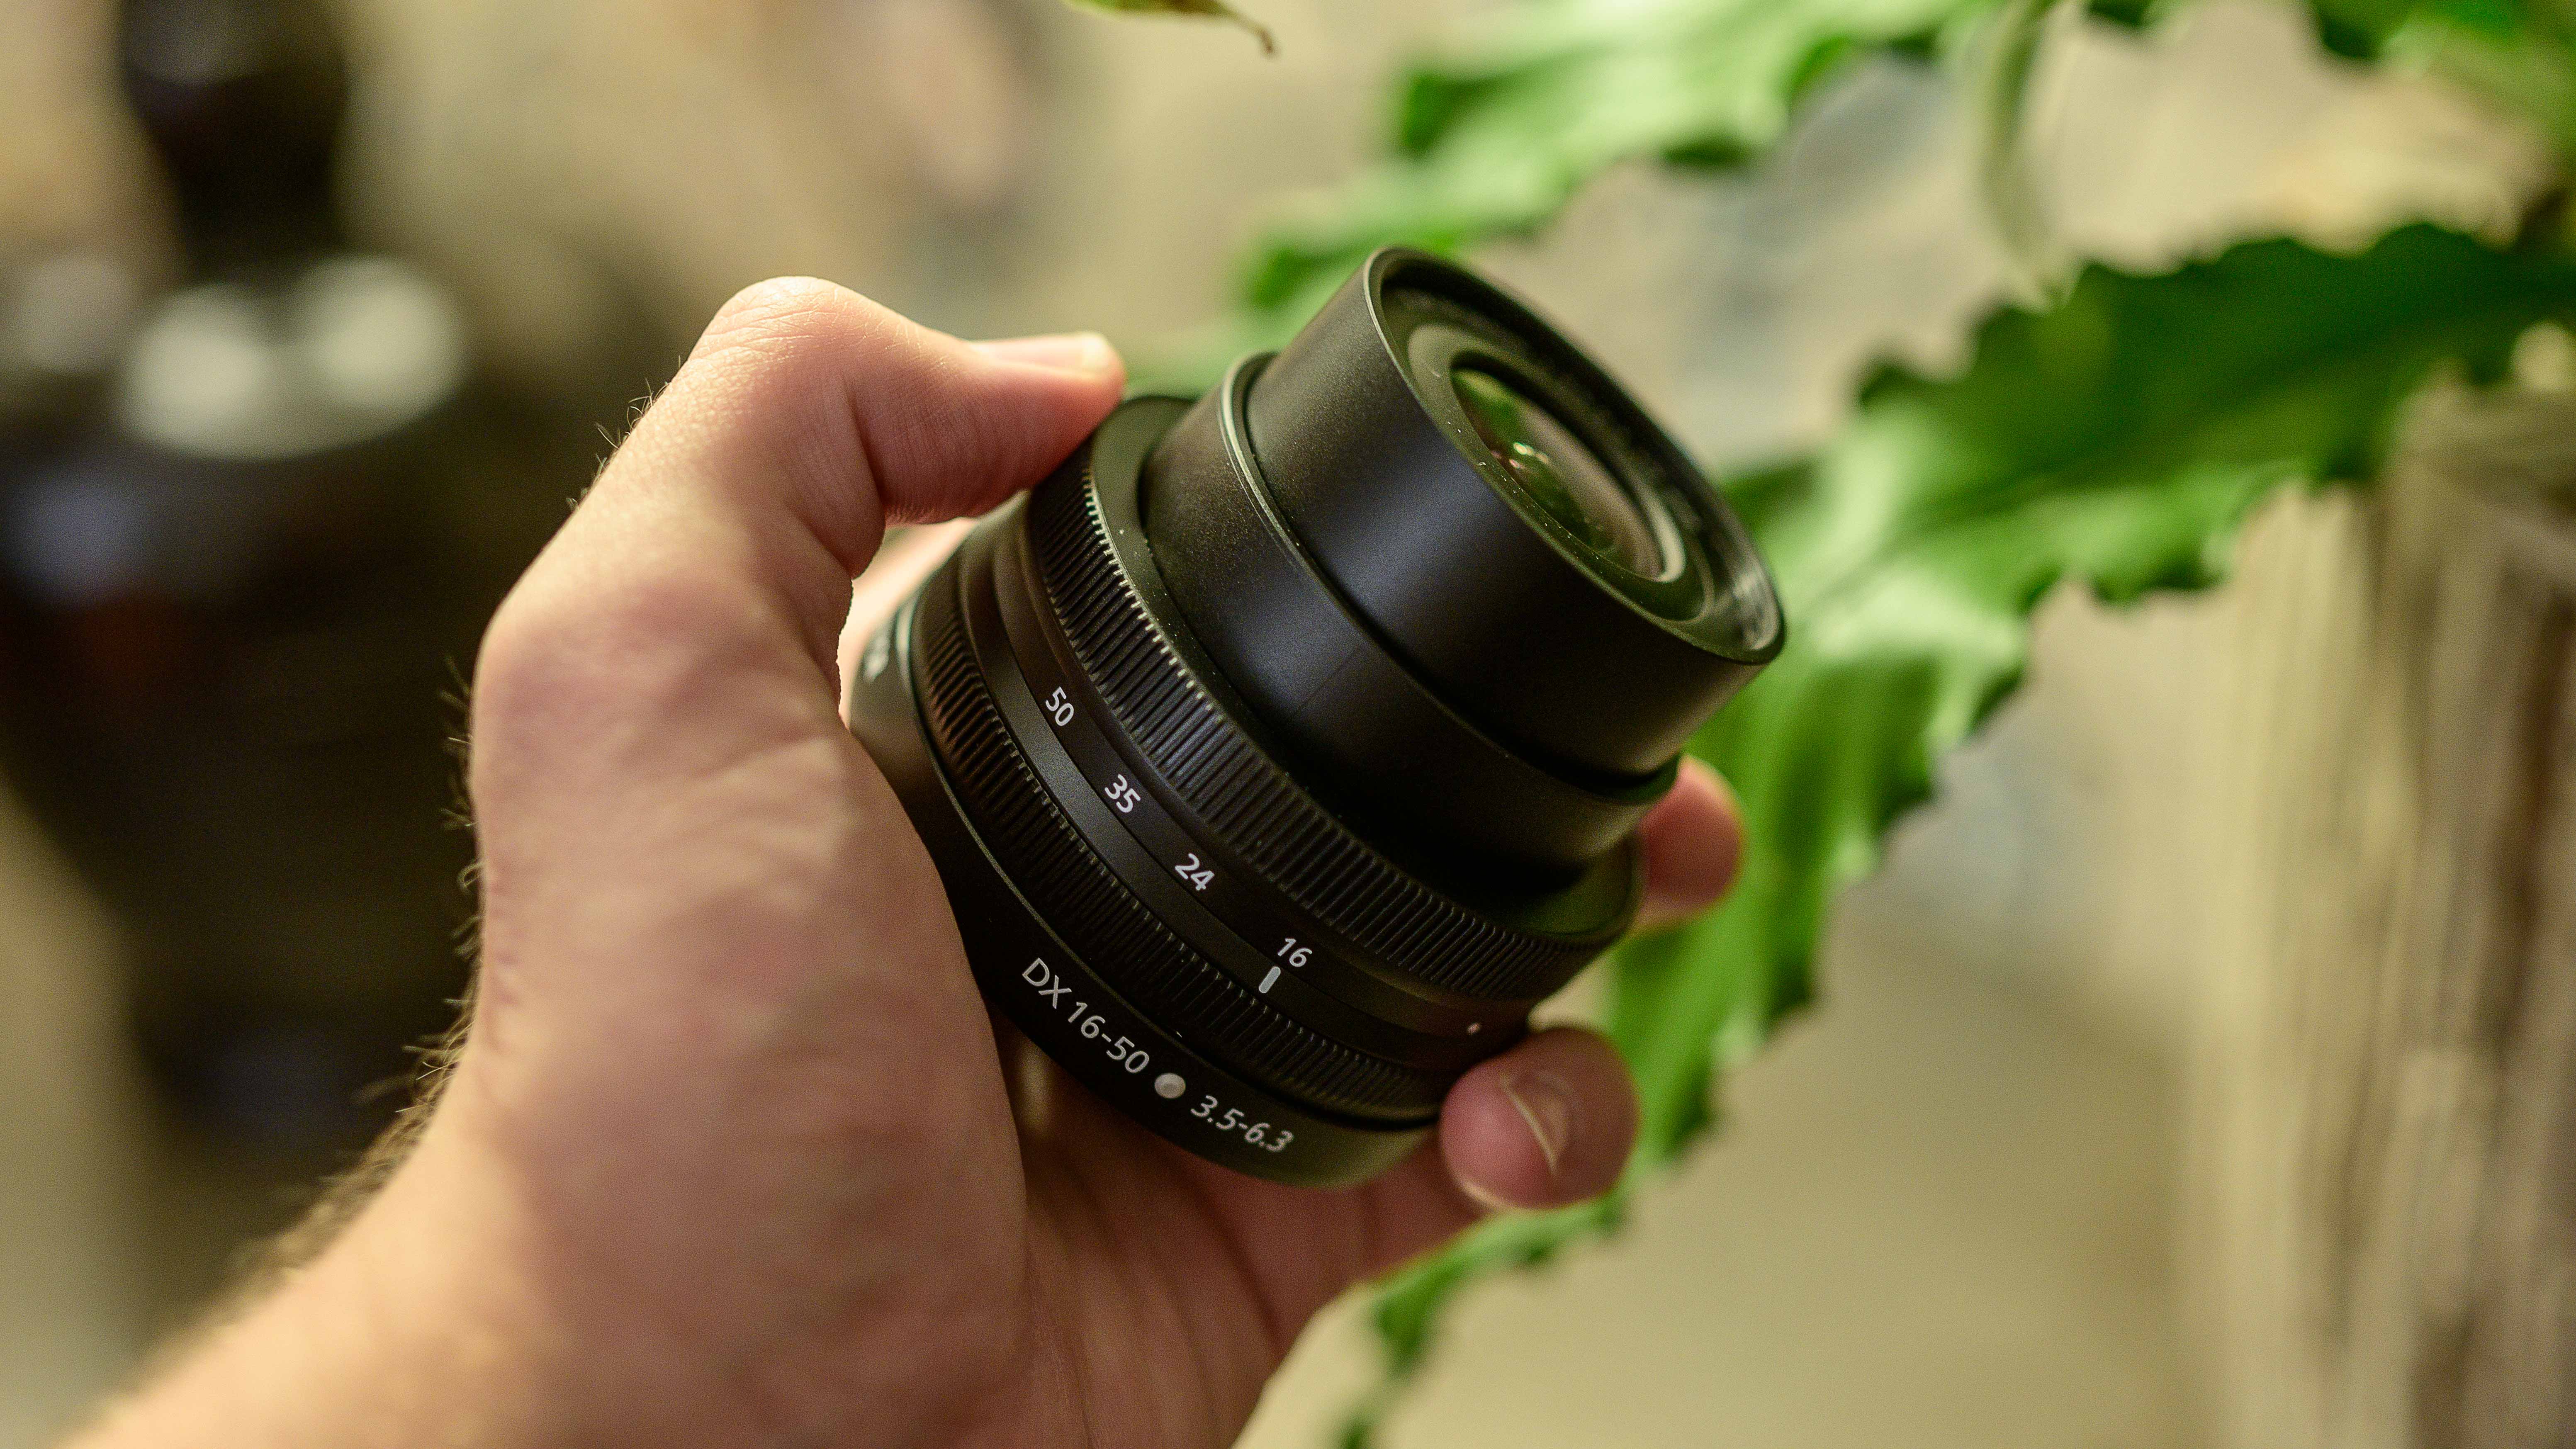 Nikkor DX 16-50mm f/3.5-6.3 VR review | Digital Camera World